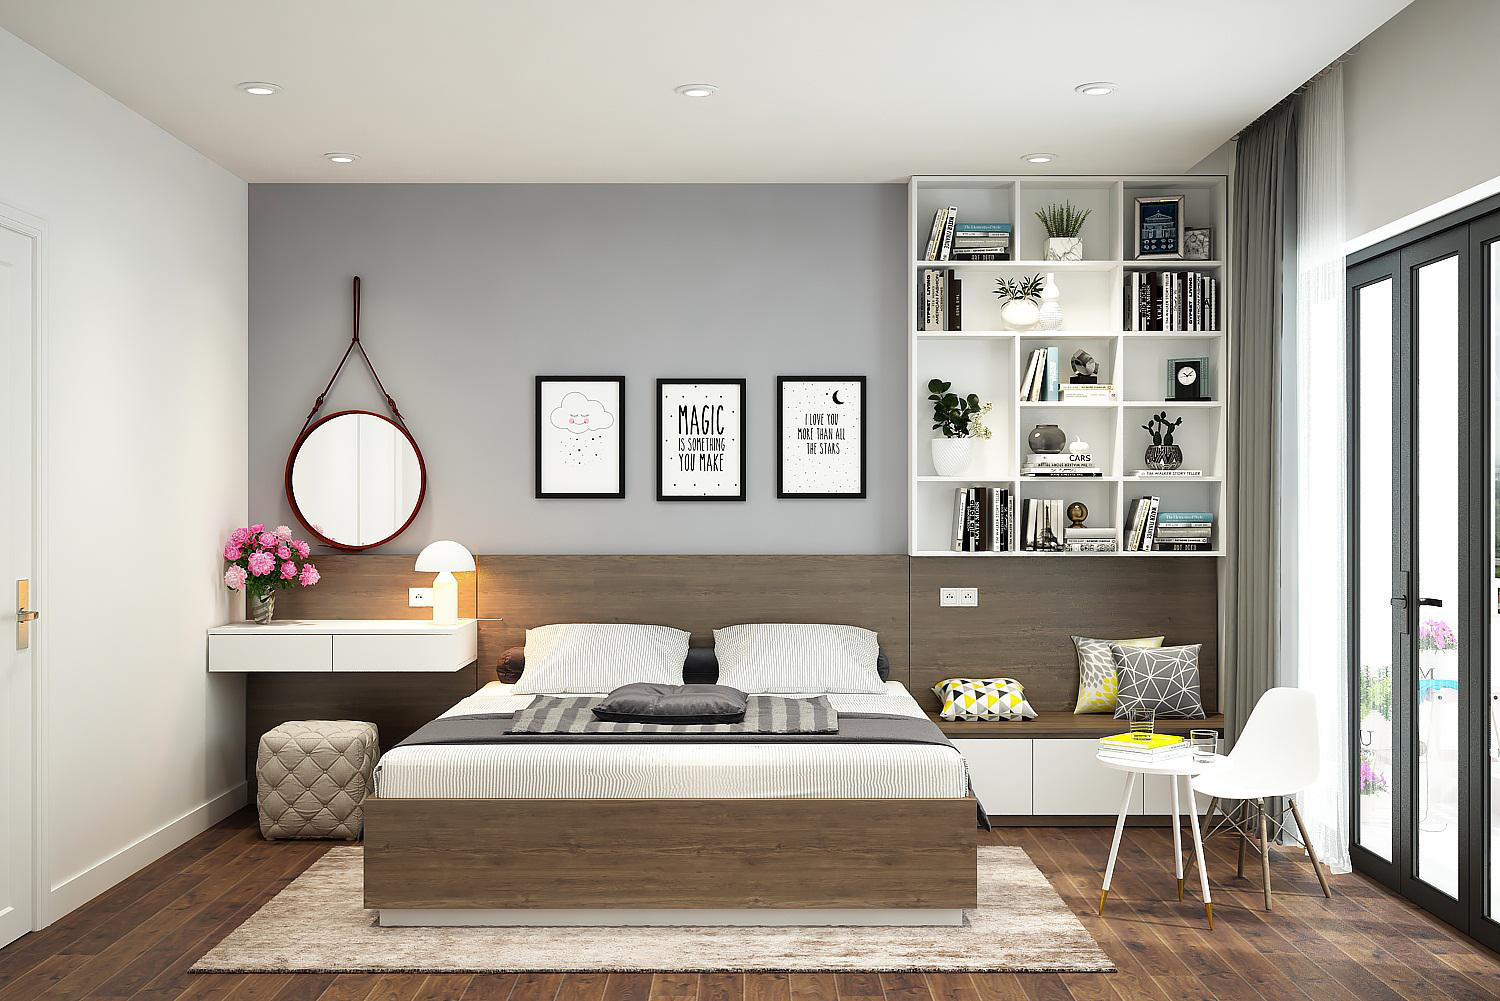 Thiết kế phòng ngủ 15m2 đẹp: Với xu hướng minimalist hiện nay, thiết kế phòng ngủ 15m2 đẹp đang trở thành xu hướng phổ biến. Bằng cách sử dụng những màu sáng, nội thất đơn giản và bố trí khoa học, phòng ngủ sẽ trở nên thoải mái và tinh tế. Nếu bạn đang có ý định thiết kế phòng ngủ cho riêng mình, hãy thử lựa chọn phong cách minimalist và tìm hiểu thêm về các mẫu thiết kế phòng ngủ đẹp nhất hiện nay.